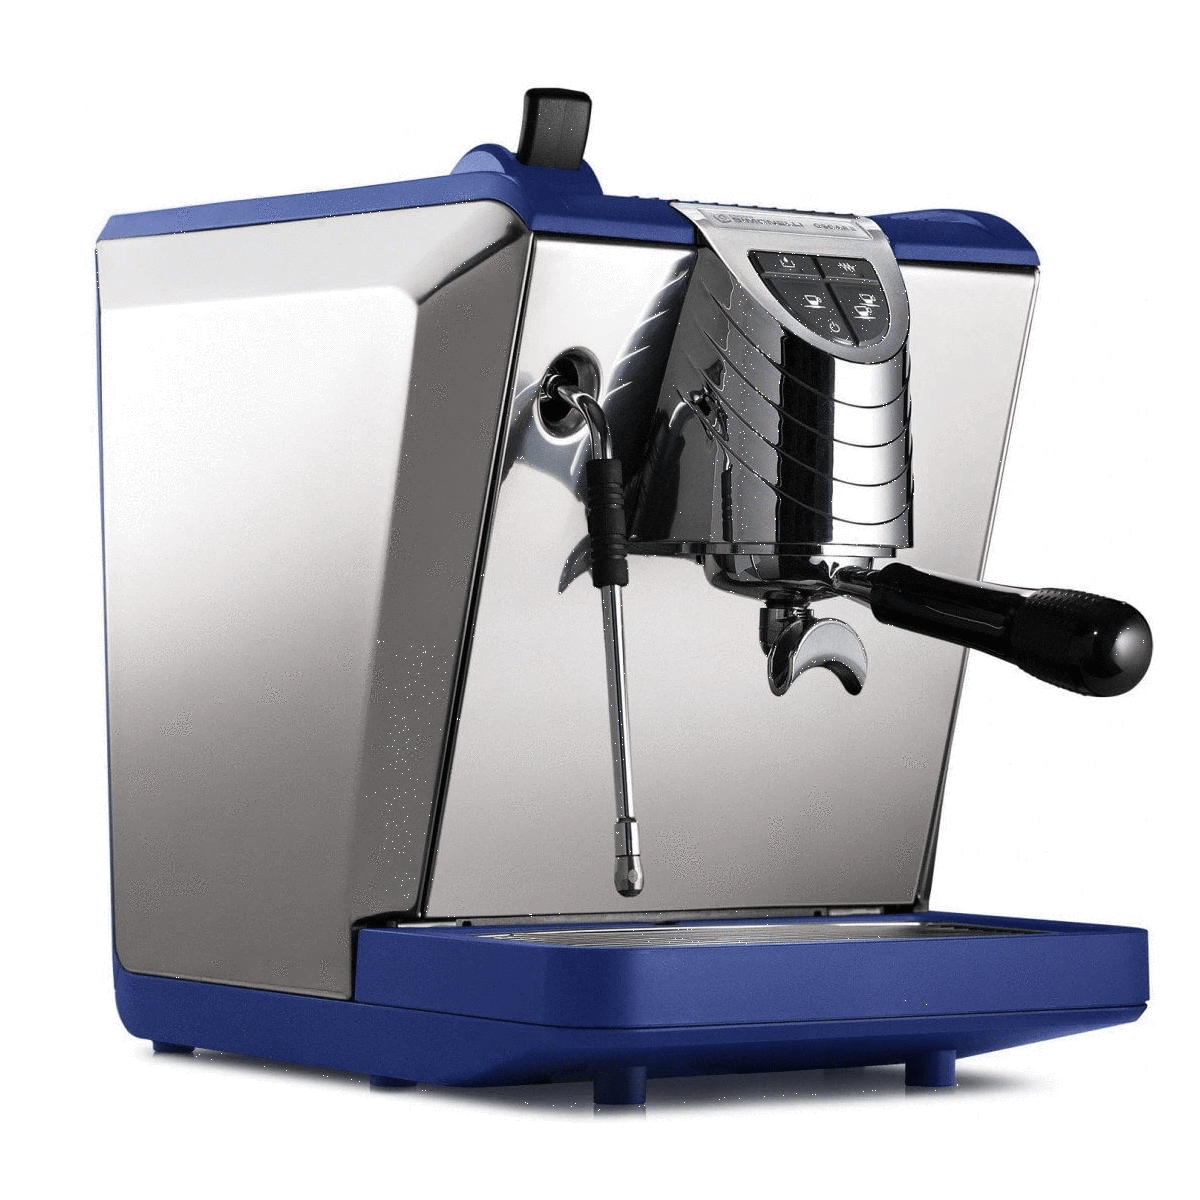 Nuova Simonelli Oscar II Espresso Machine